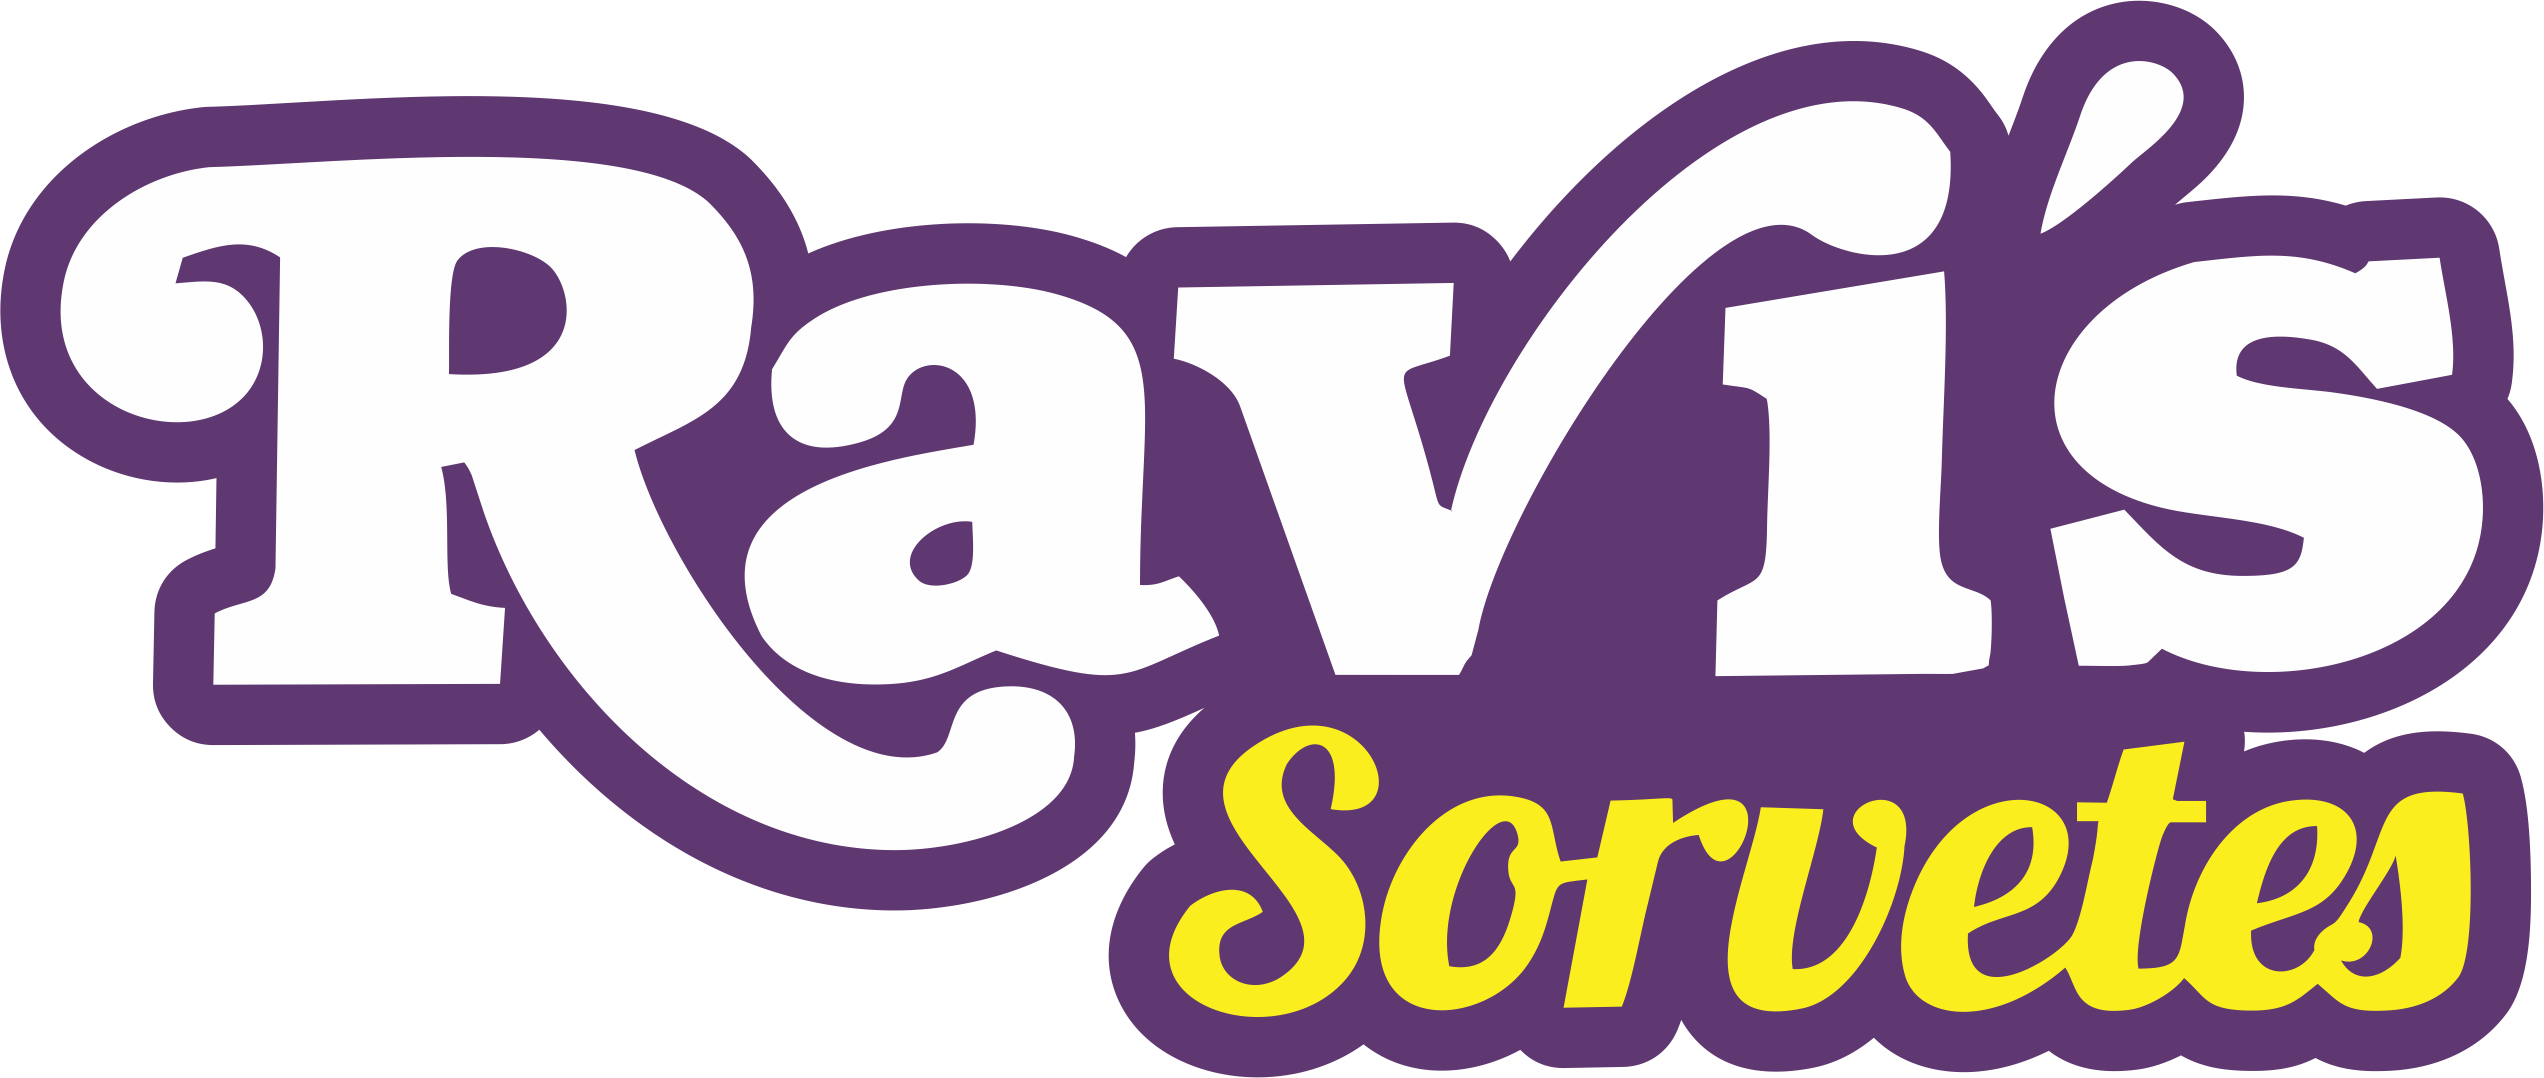 Ravi's Sorvetes